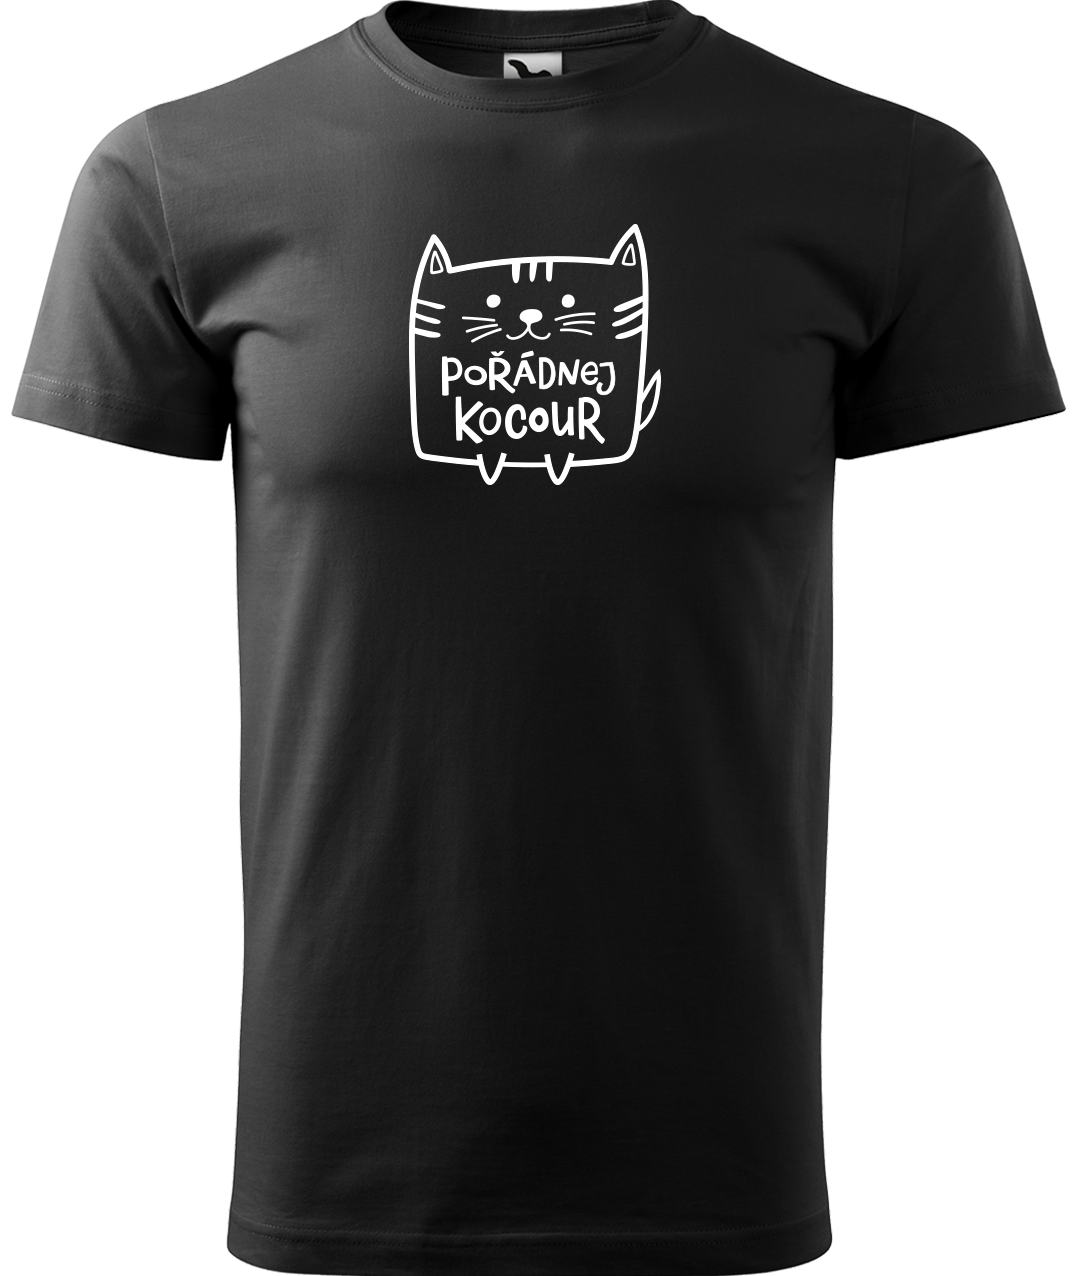 Pánské tričko s kočkou - Pořádnej kocour Velikost: M, Barva: Černá (01)